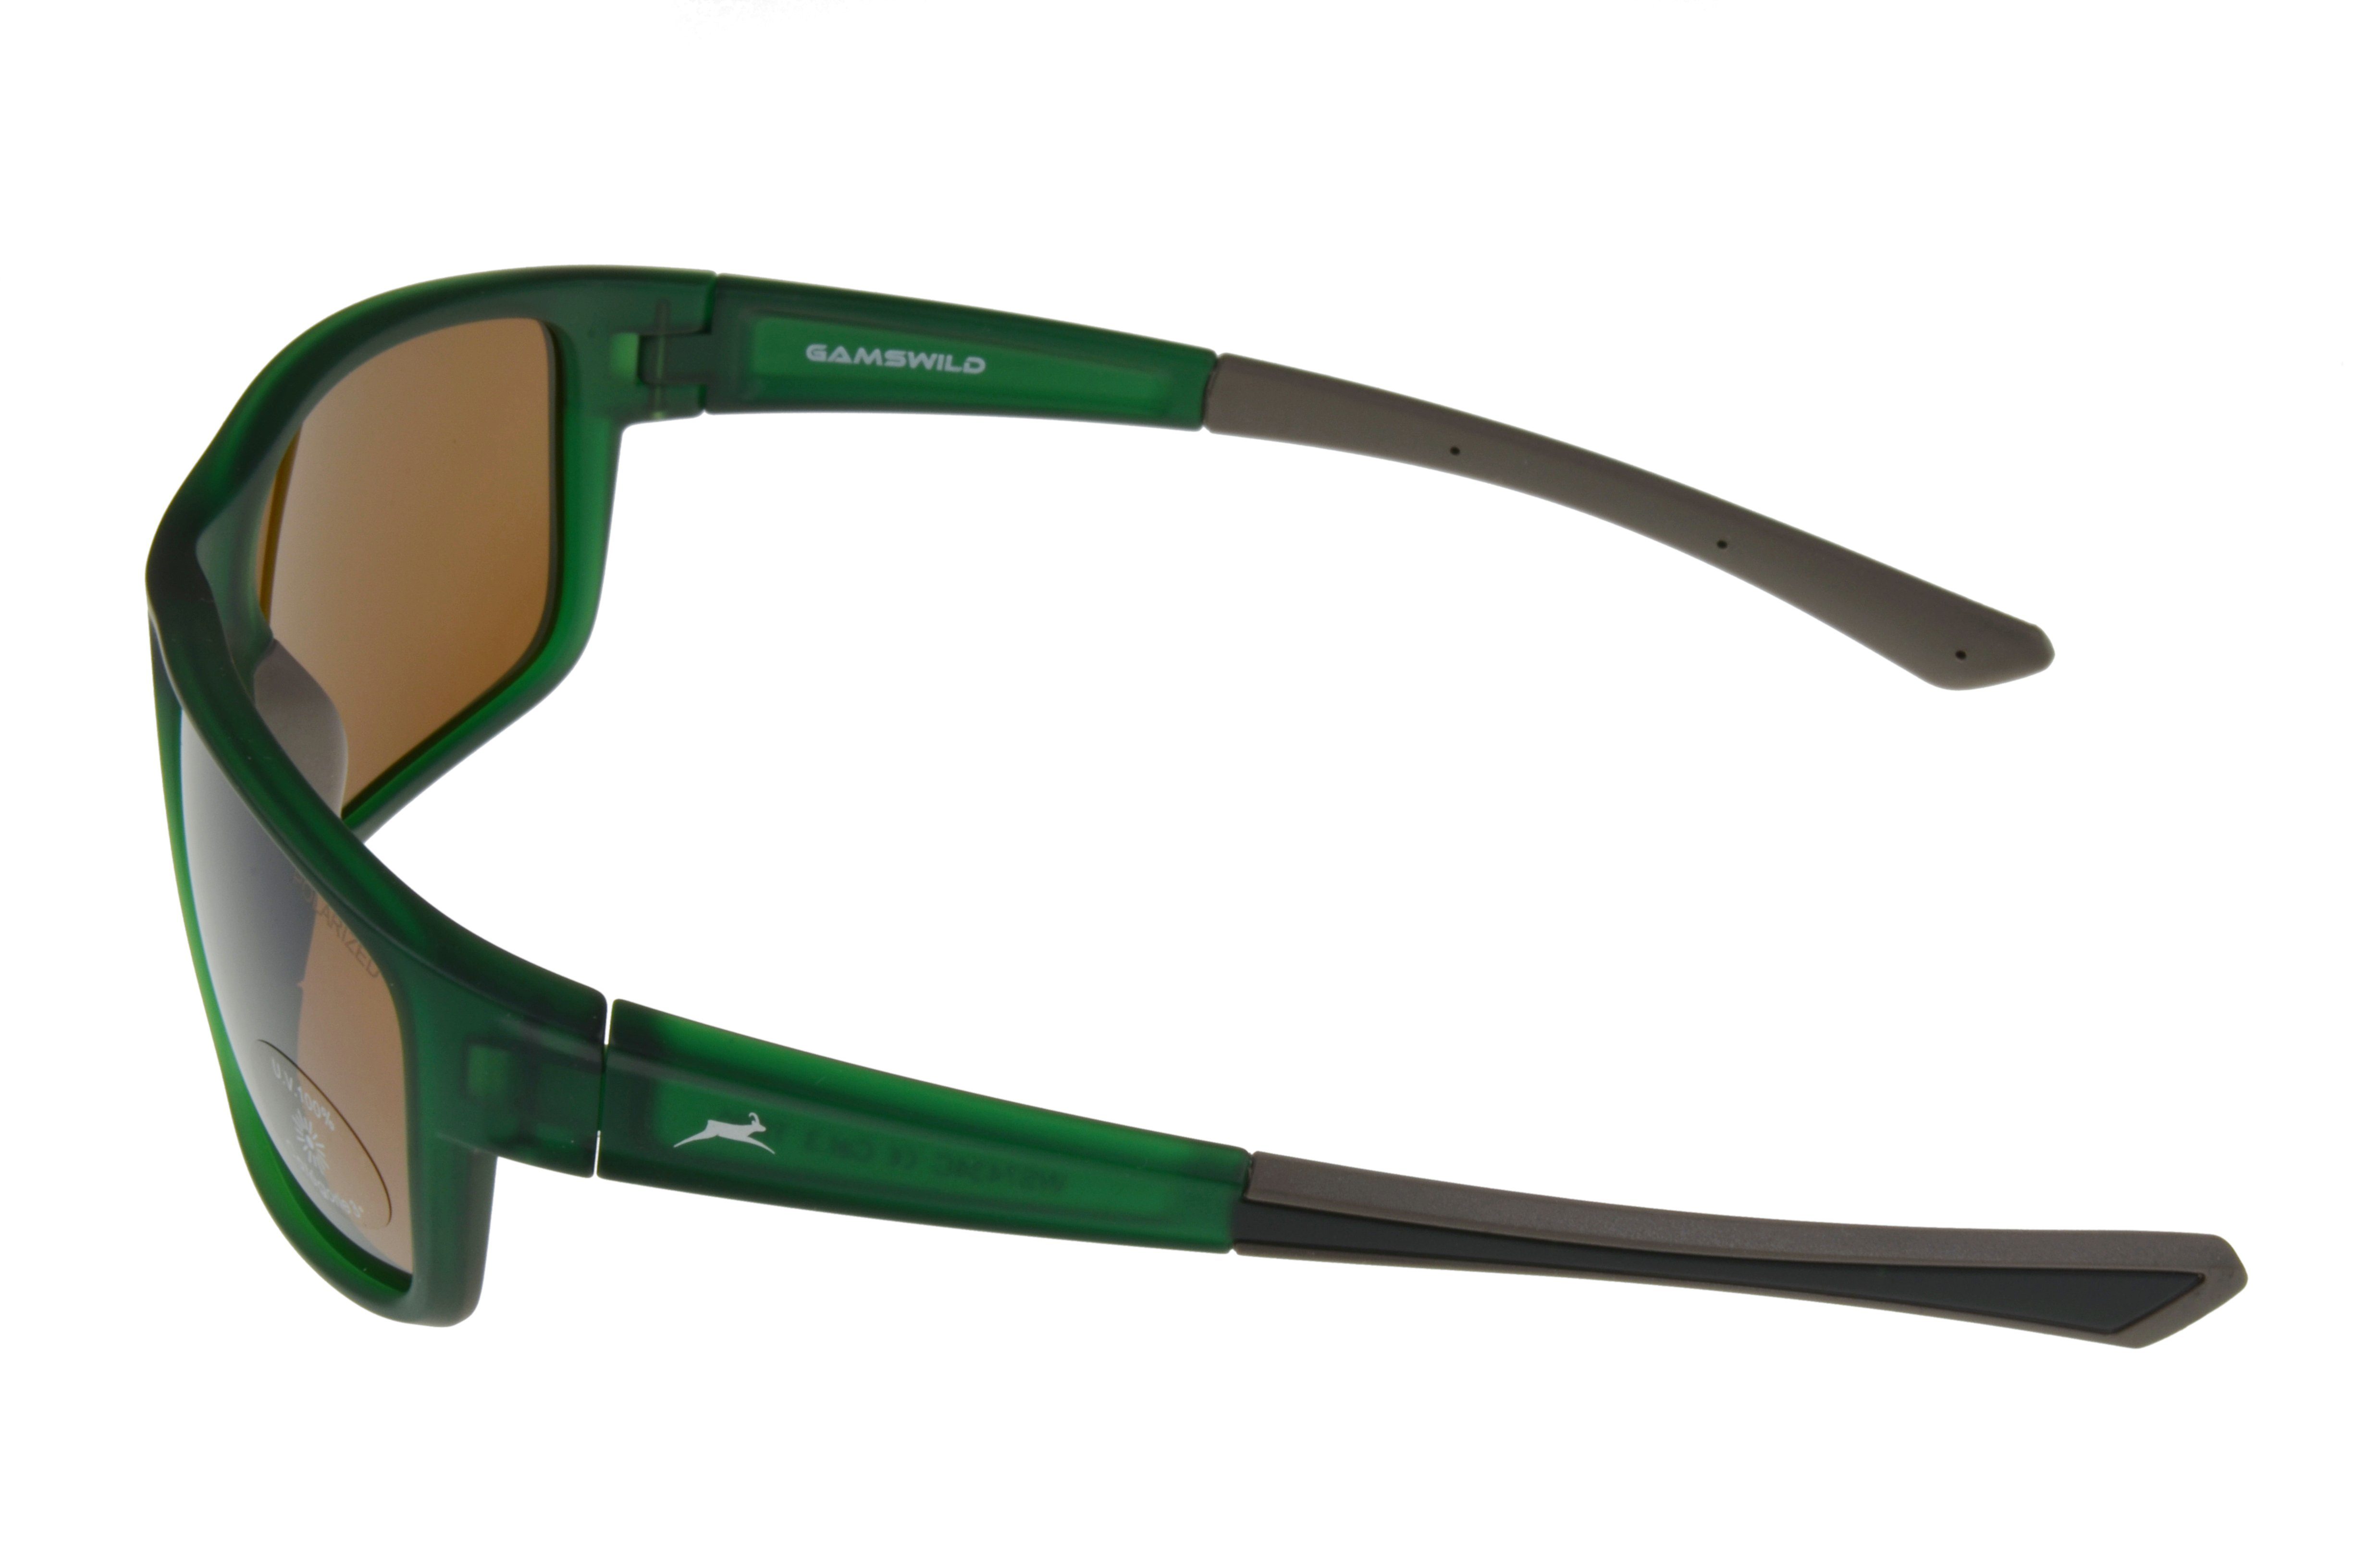 Gamswild Sportbrille WS7434 Sonnenbrille Skibrille Fahrradbrille Damen  Herren Unisex, schmal geschnittenes Modell, braun, schwarz, pink, grün